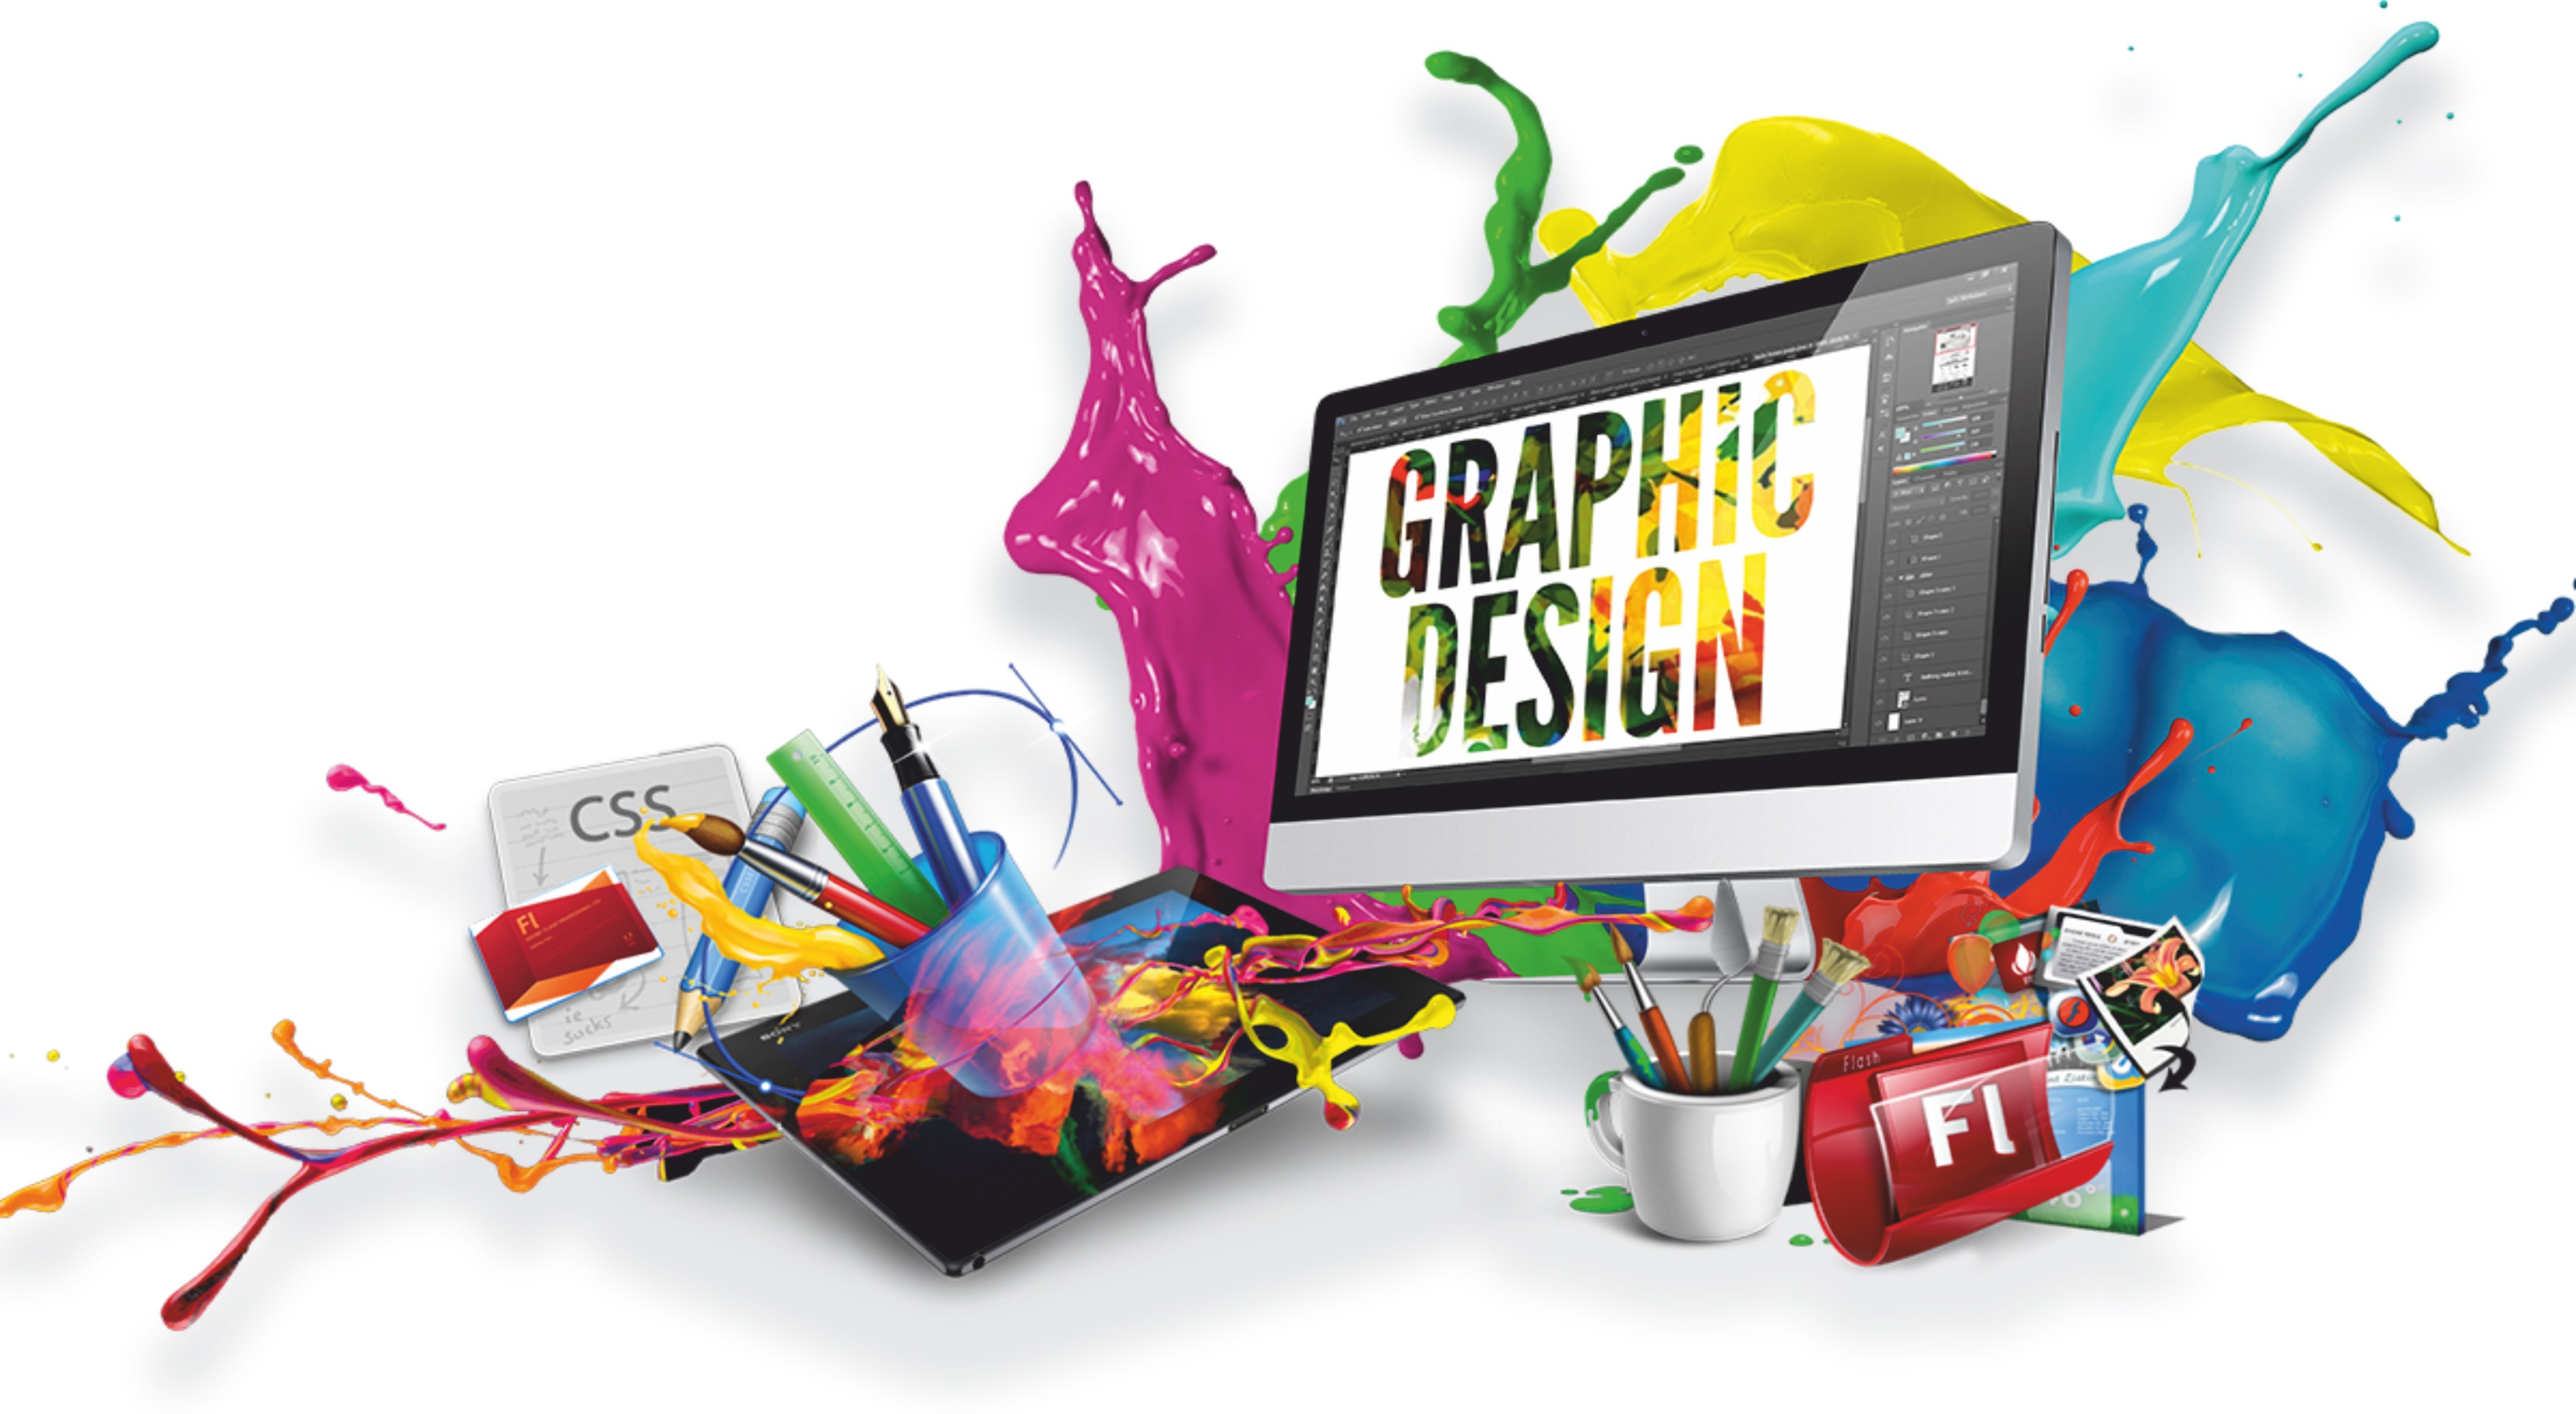 Graphic web. Графический дизайн. Компьютерная Графика и дизайн. Веб дизайн. Графический дизайн и мультимедиа.